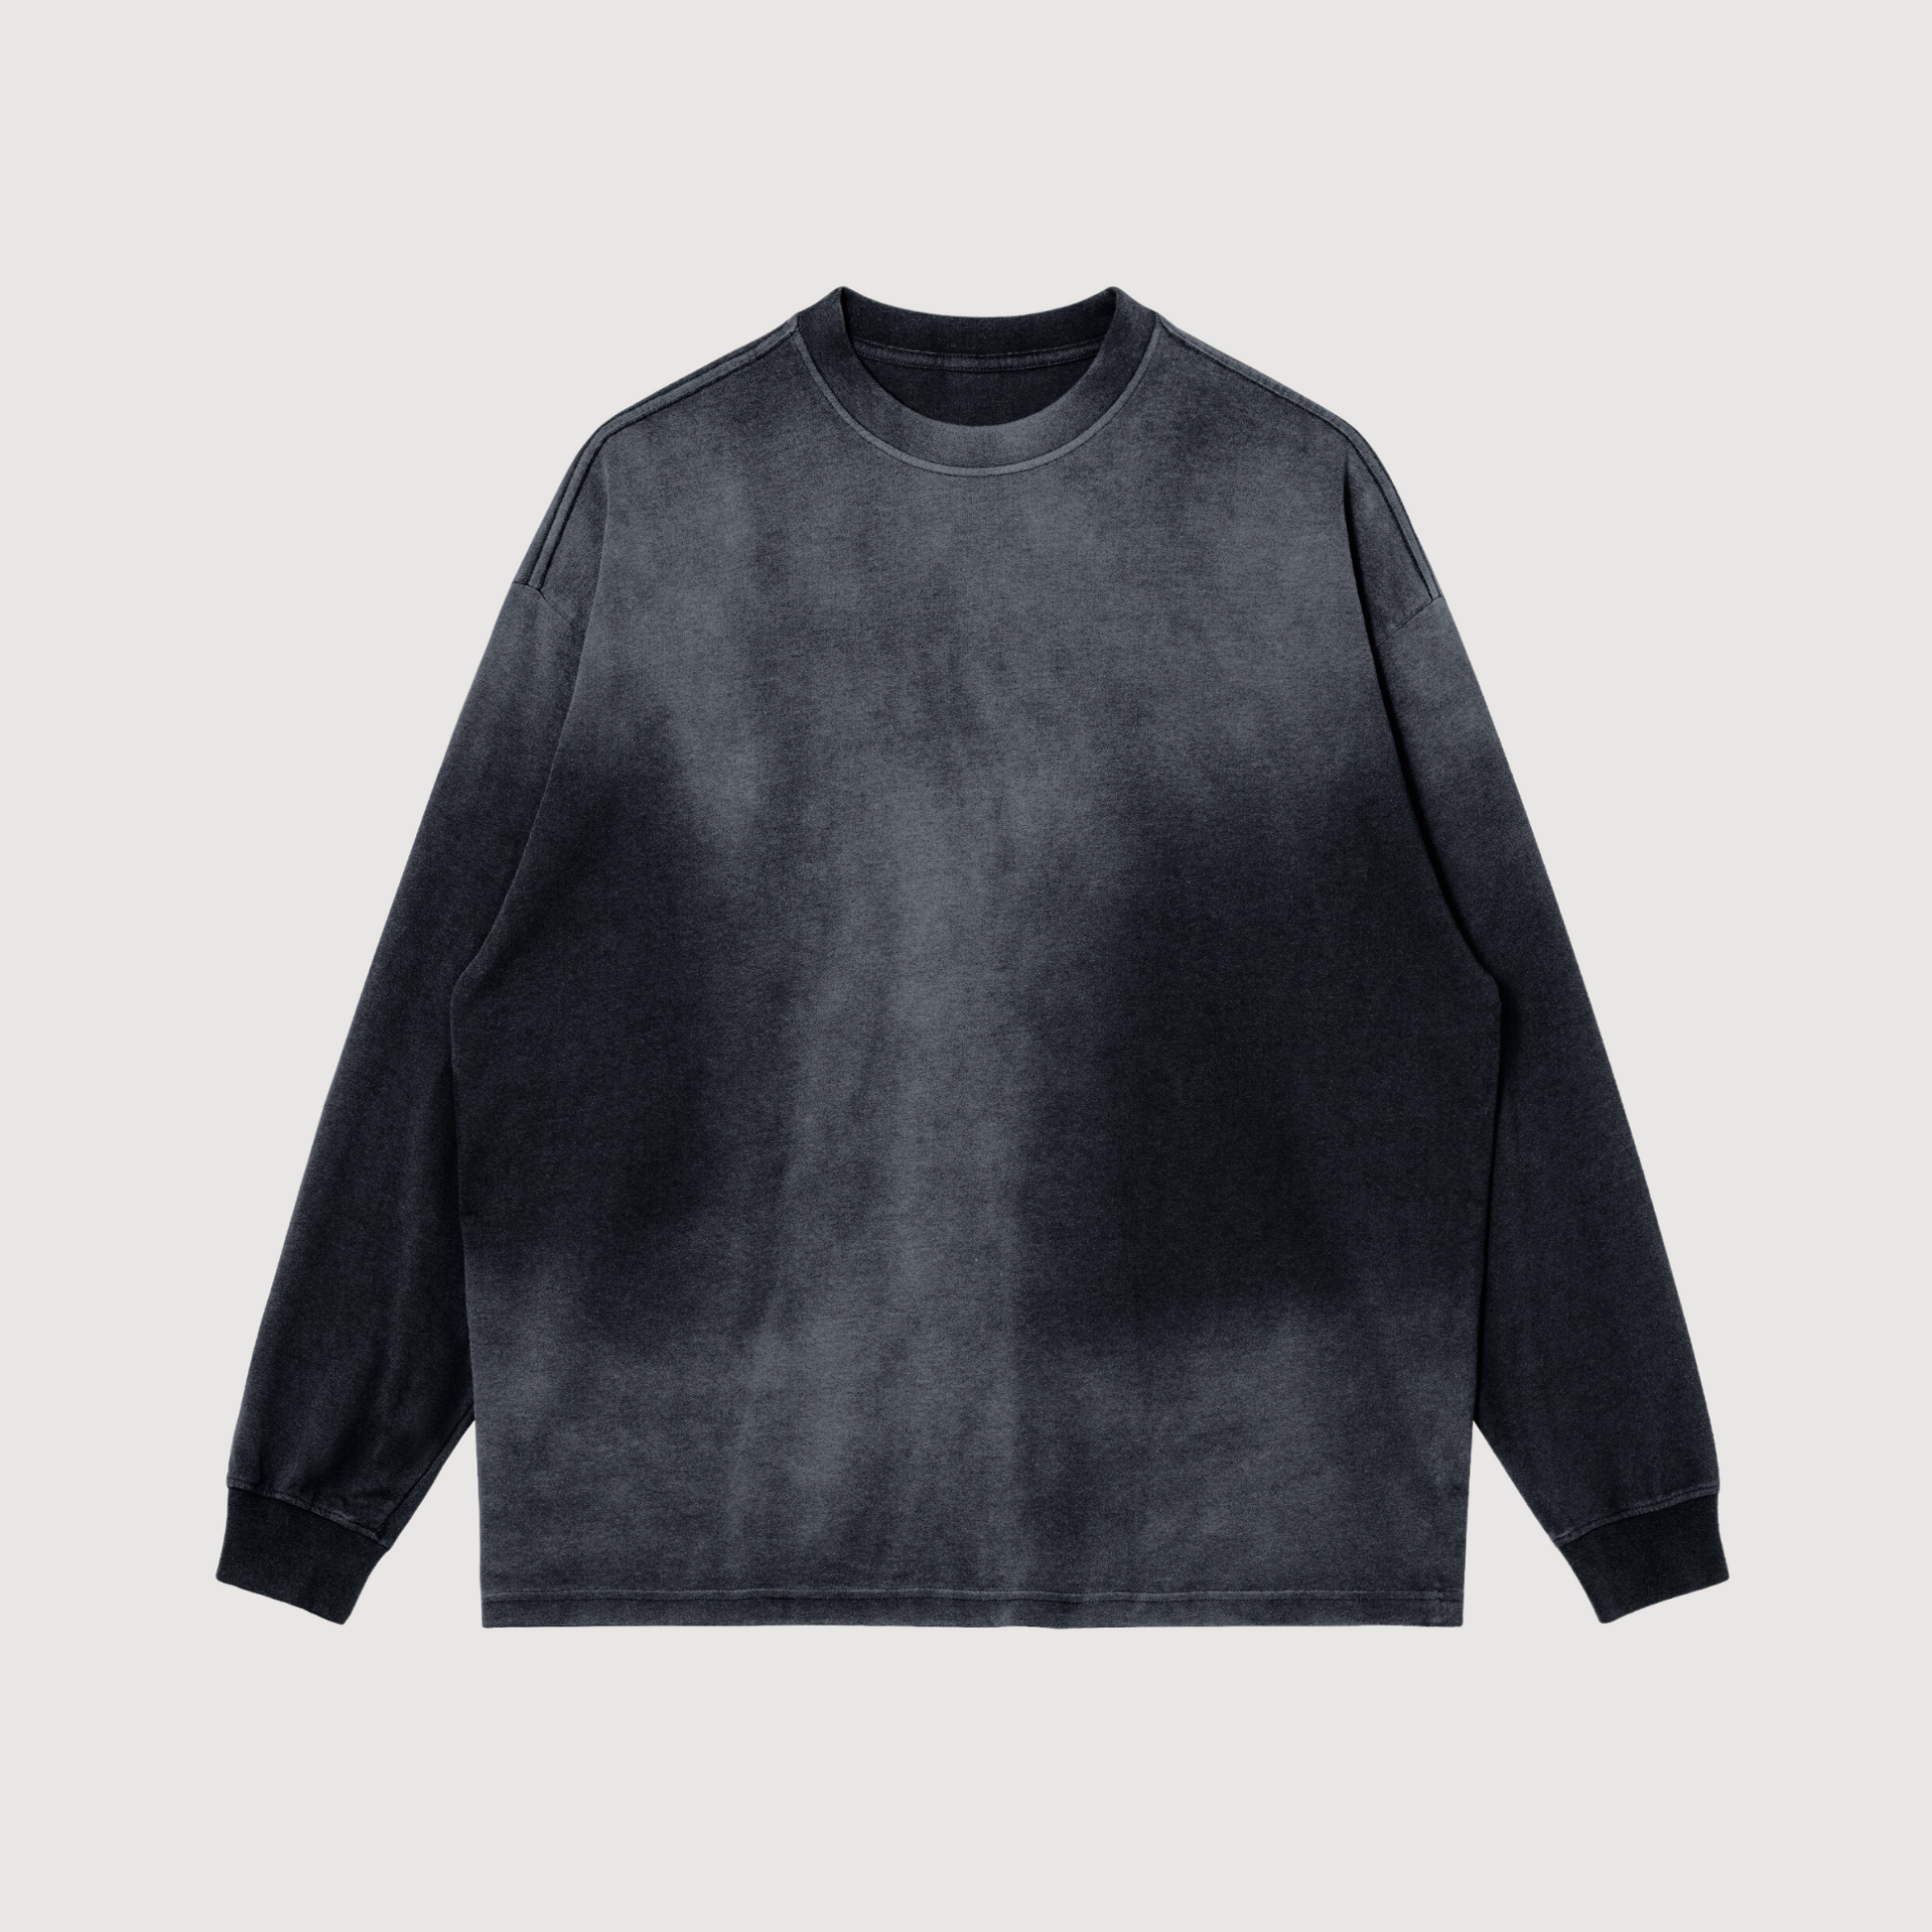 black crewneck sweatshirt, long sleeved crew, dyed tones of grey crewneck, luxury streetwear AETERIUS